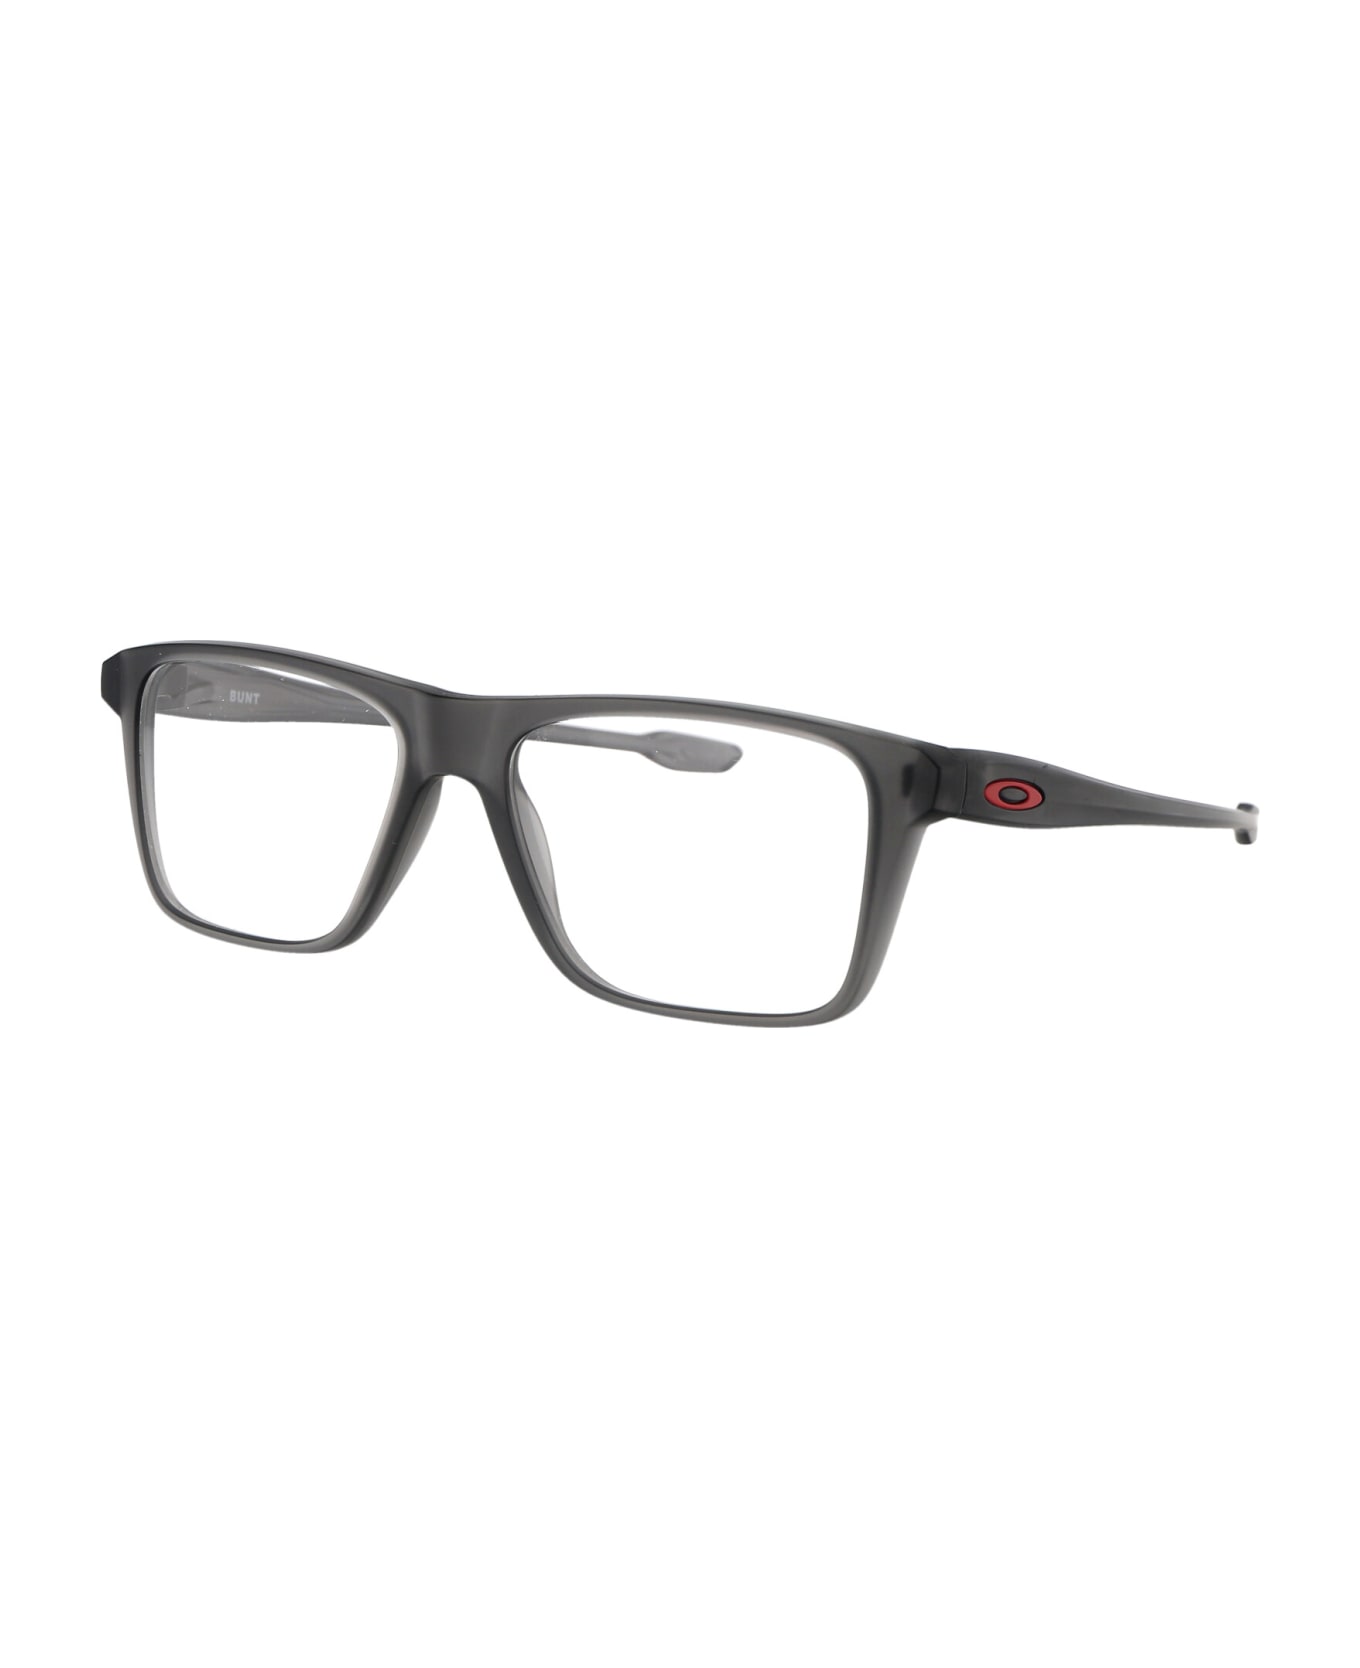 Oakley Bunt Glasses - 802602 SATIN GREY SMOKE DEMO LENS